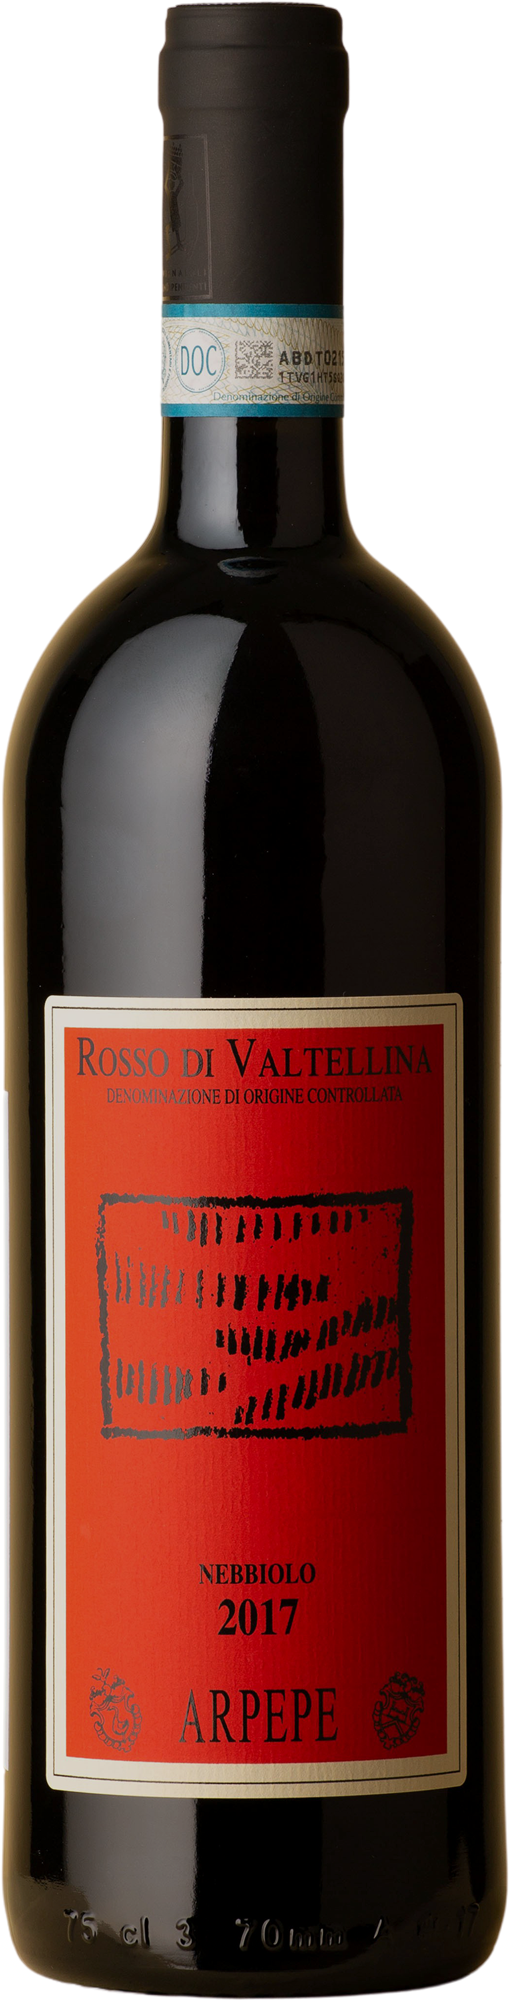 Arpepe. - Rosso Di Valtellina Nebbiolo 2017 Red Wine